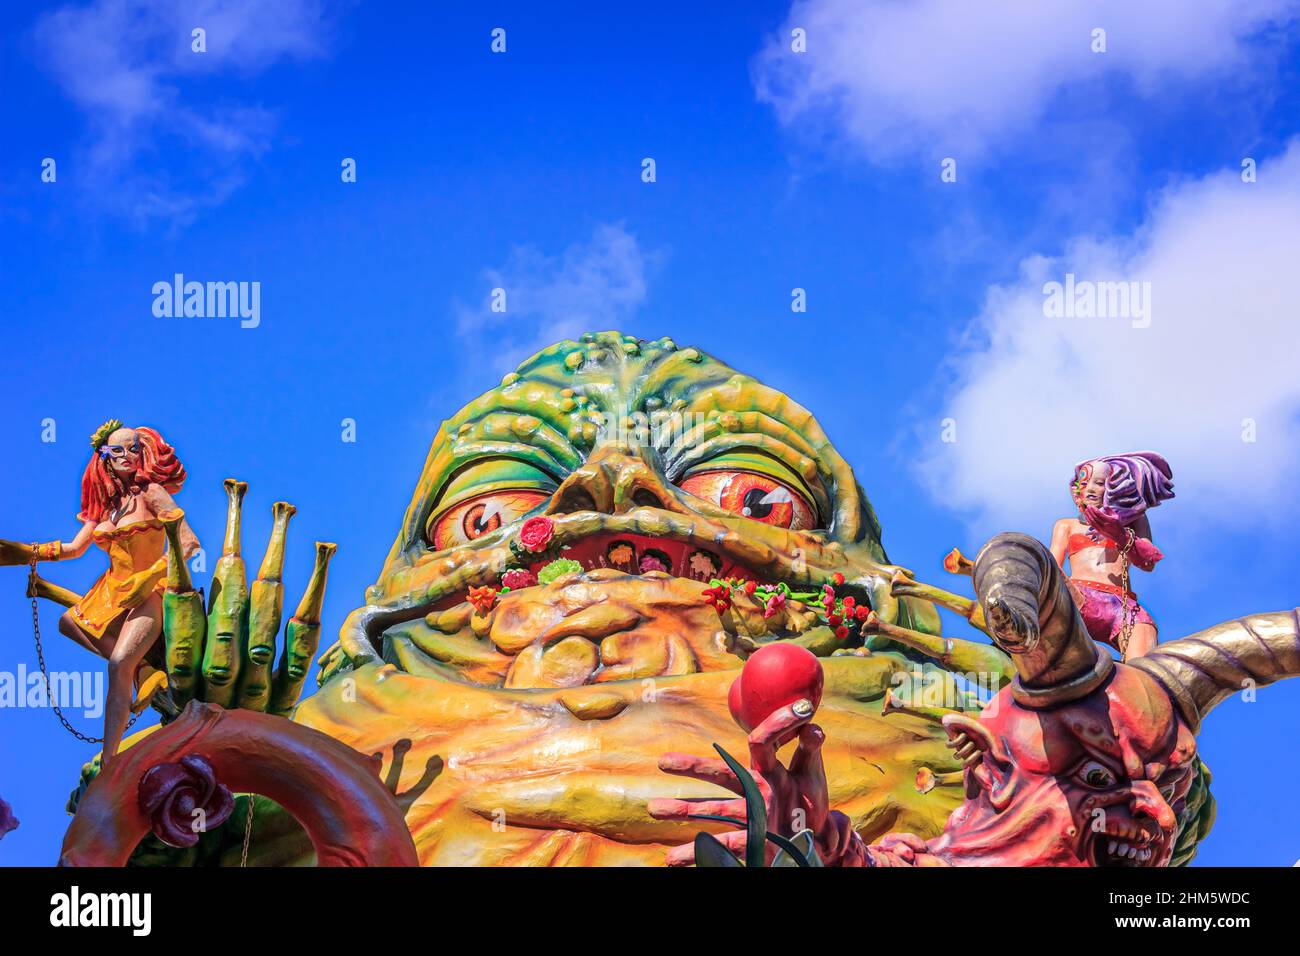 Putignano, Apulia, Italie - 15 février 2015 : flotteurs de carnaval, monstre de la maque papier. Carnaval de Putignano: Flotteur allégorique de péchés mortels Banque D'Images